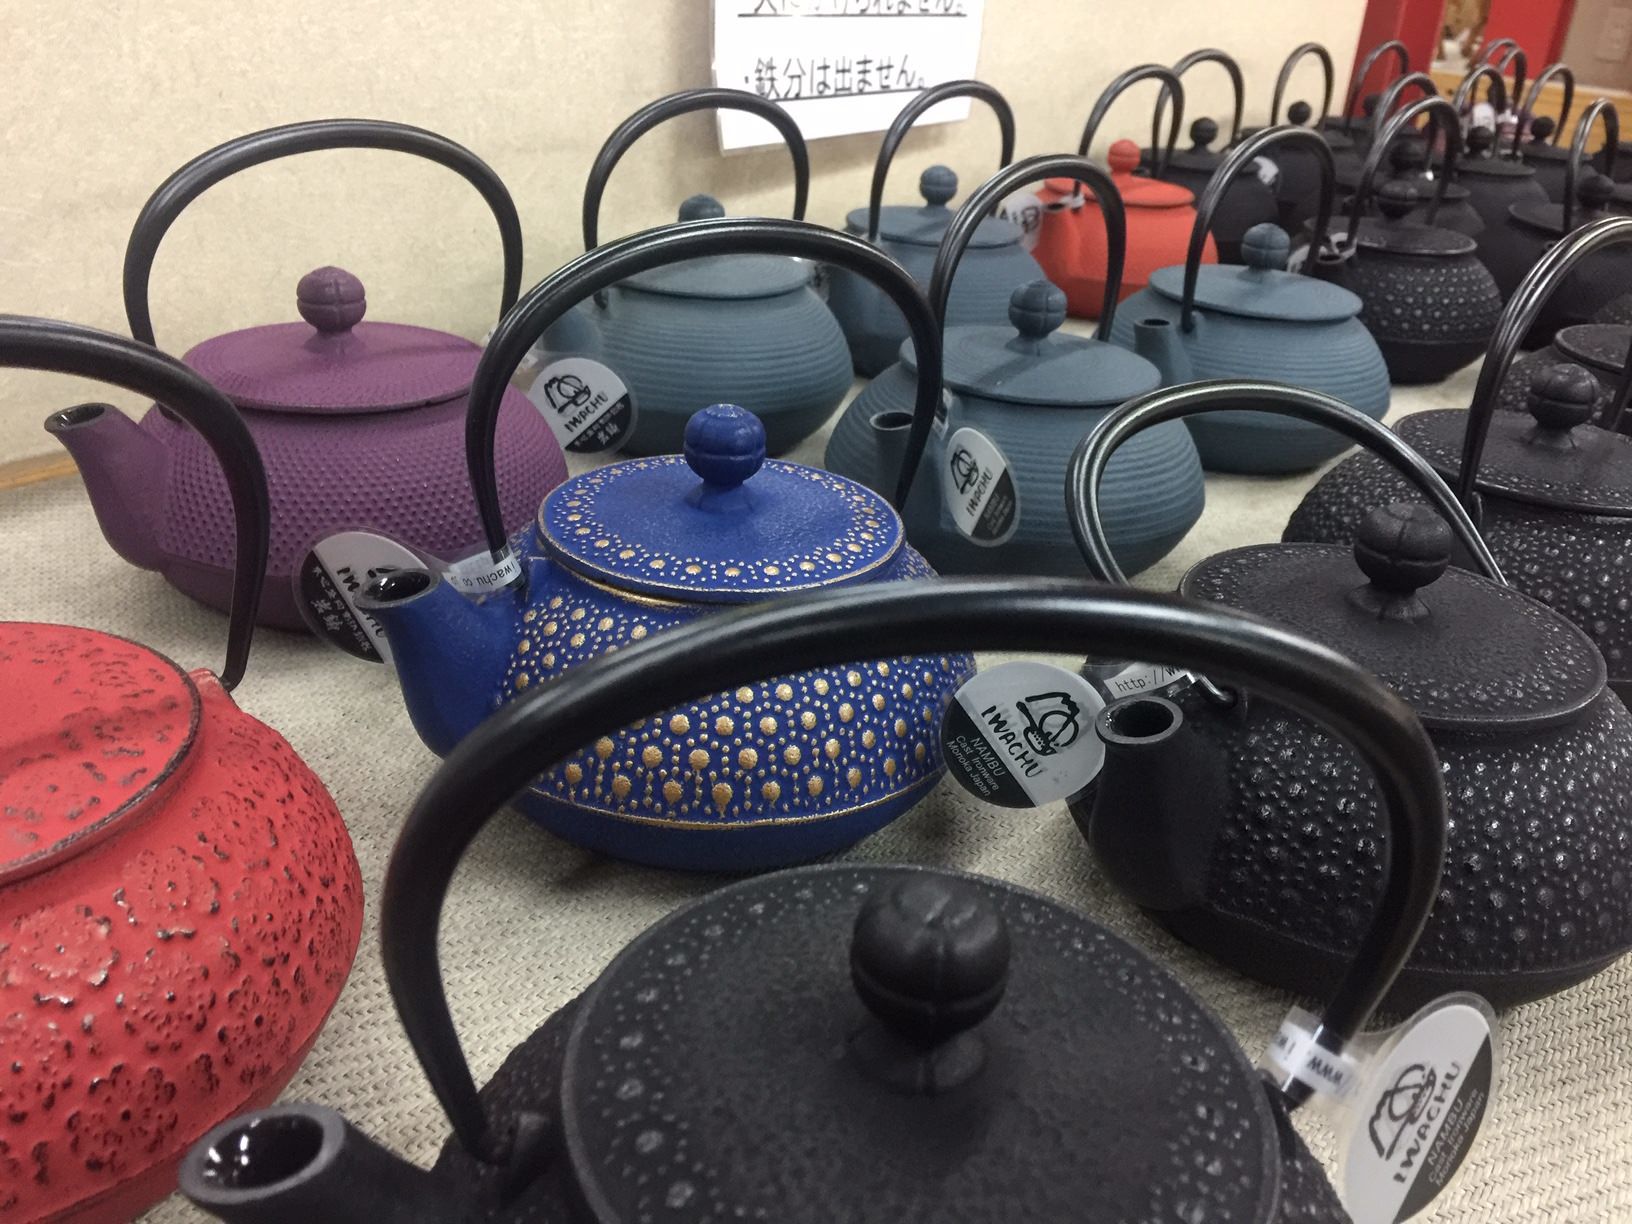 https://www.booniehicks.com/wp-content/uploads/2019/07/Iwachu-cast-iron-teapots.jpg